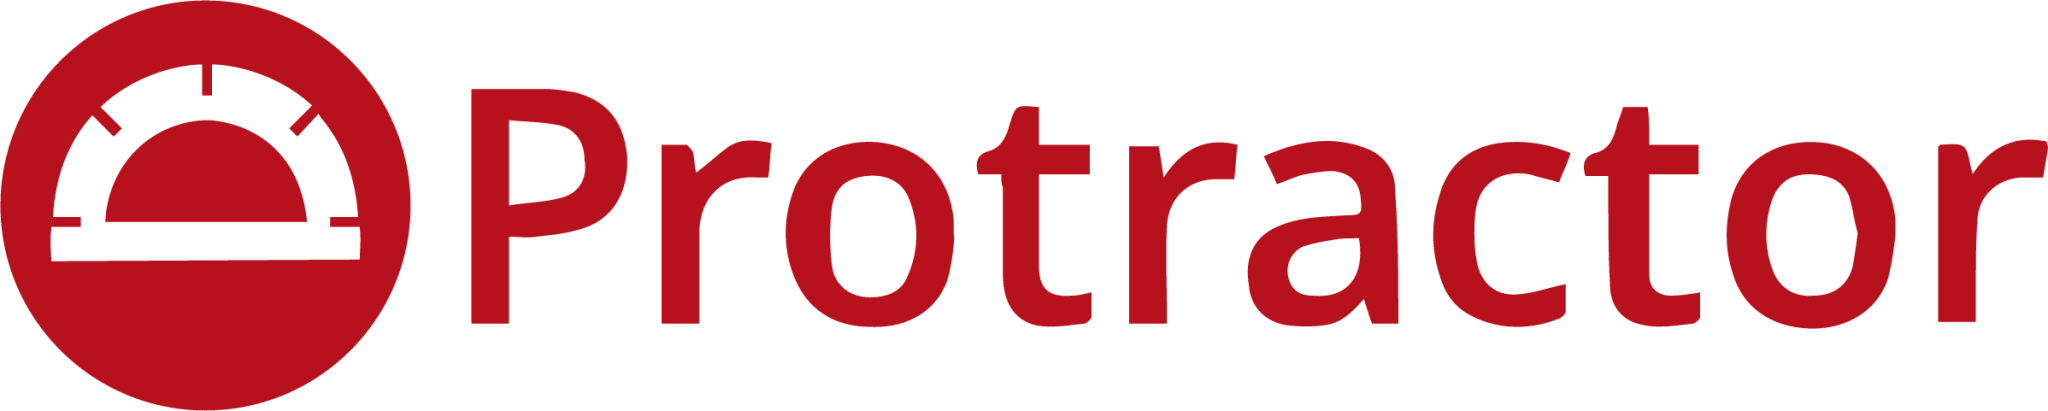 protractor plain wordmark icon